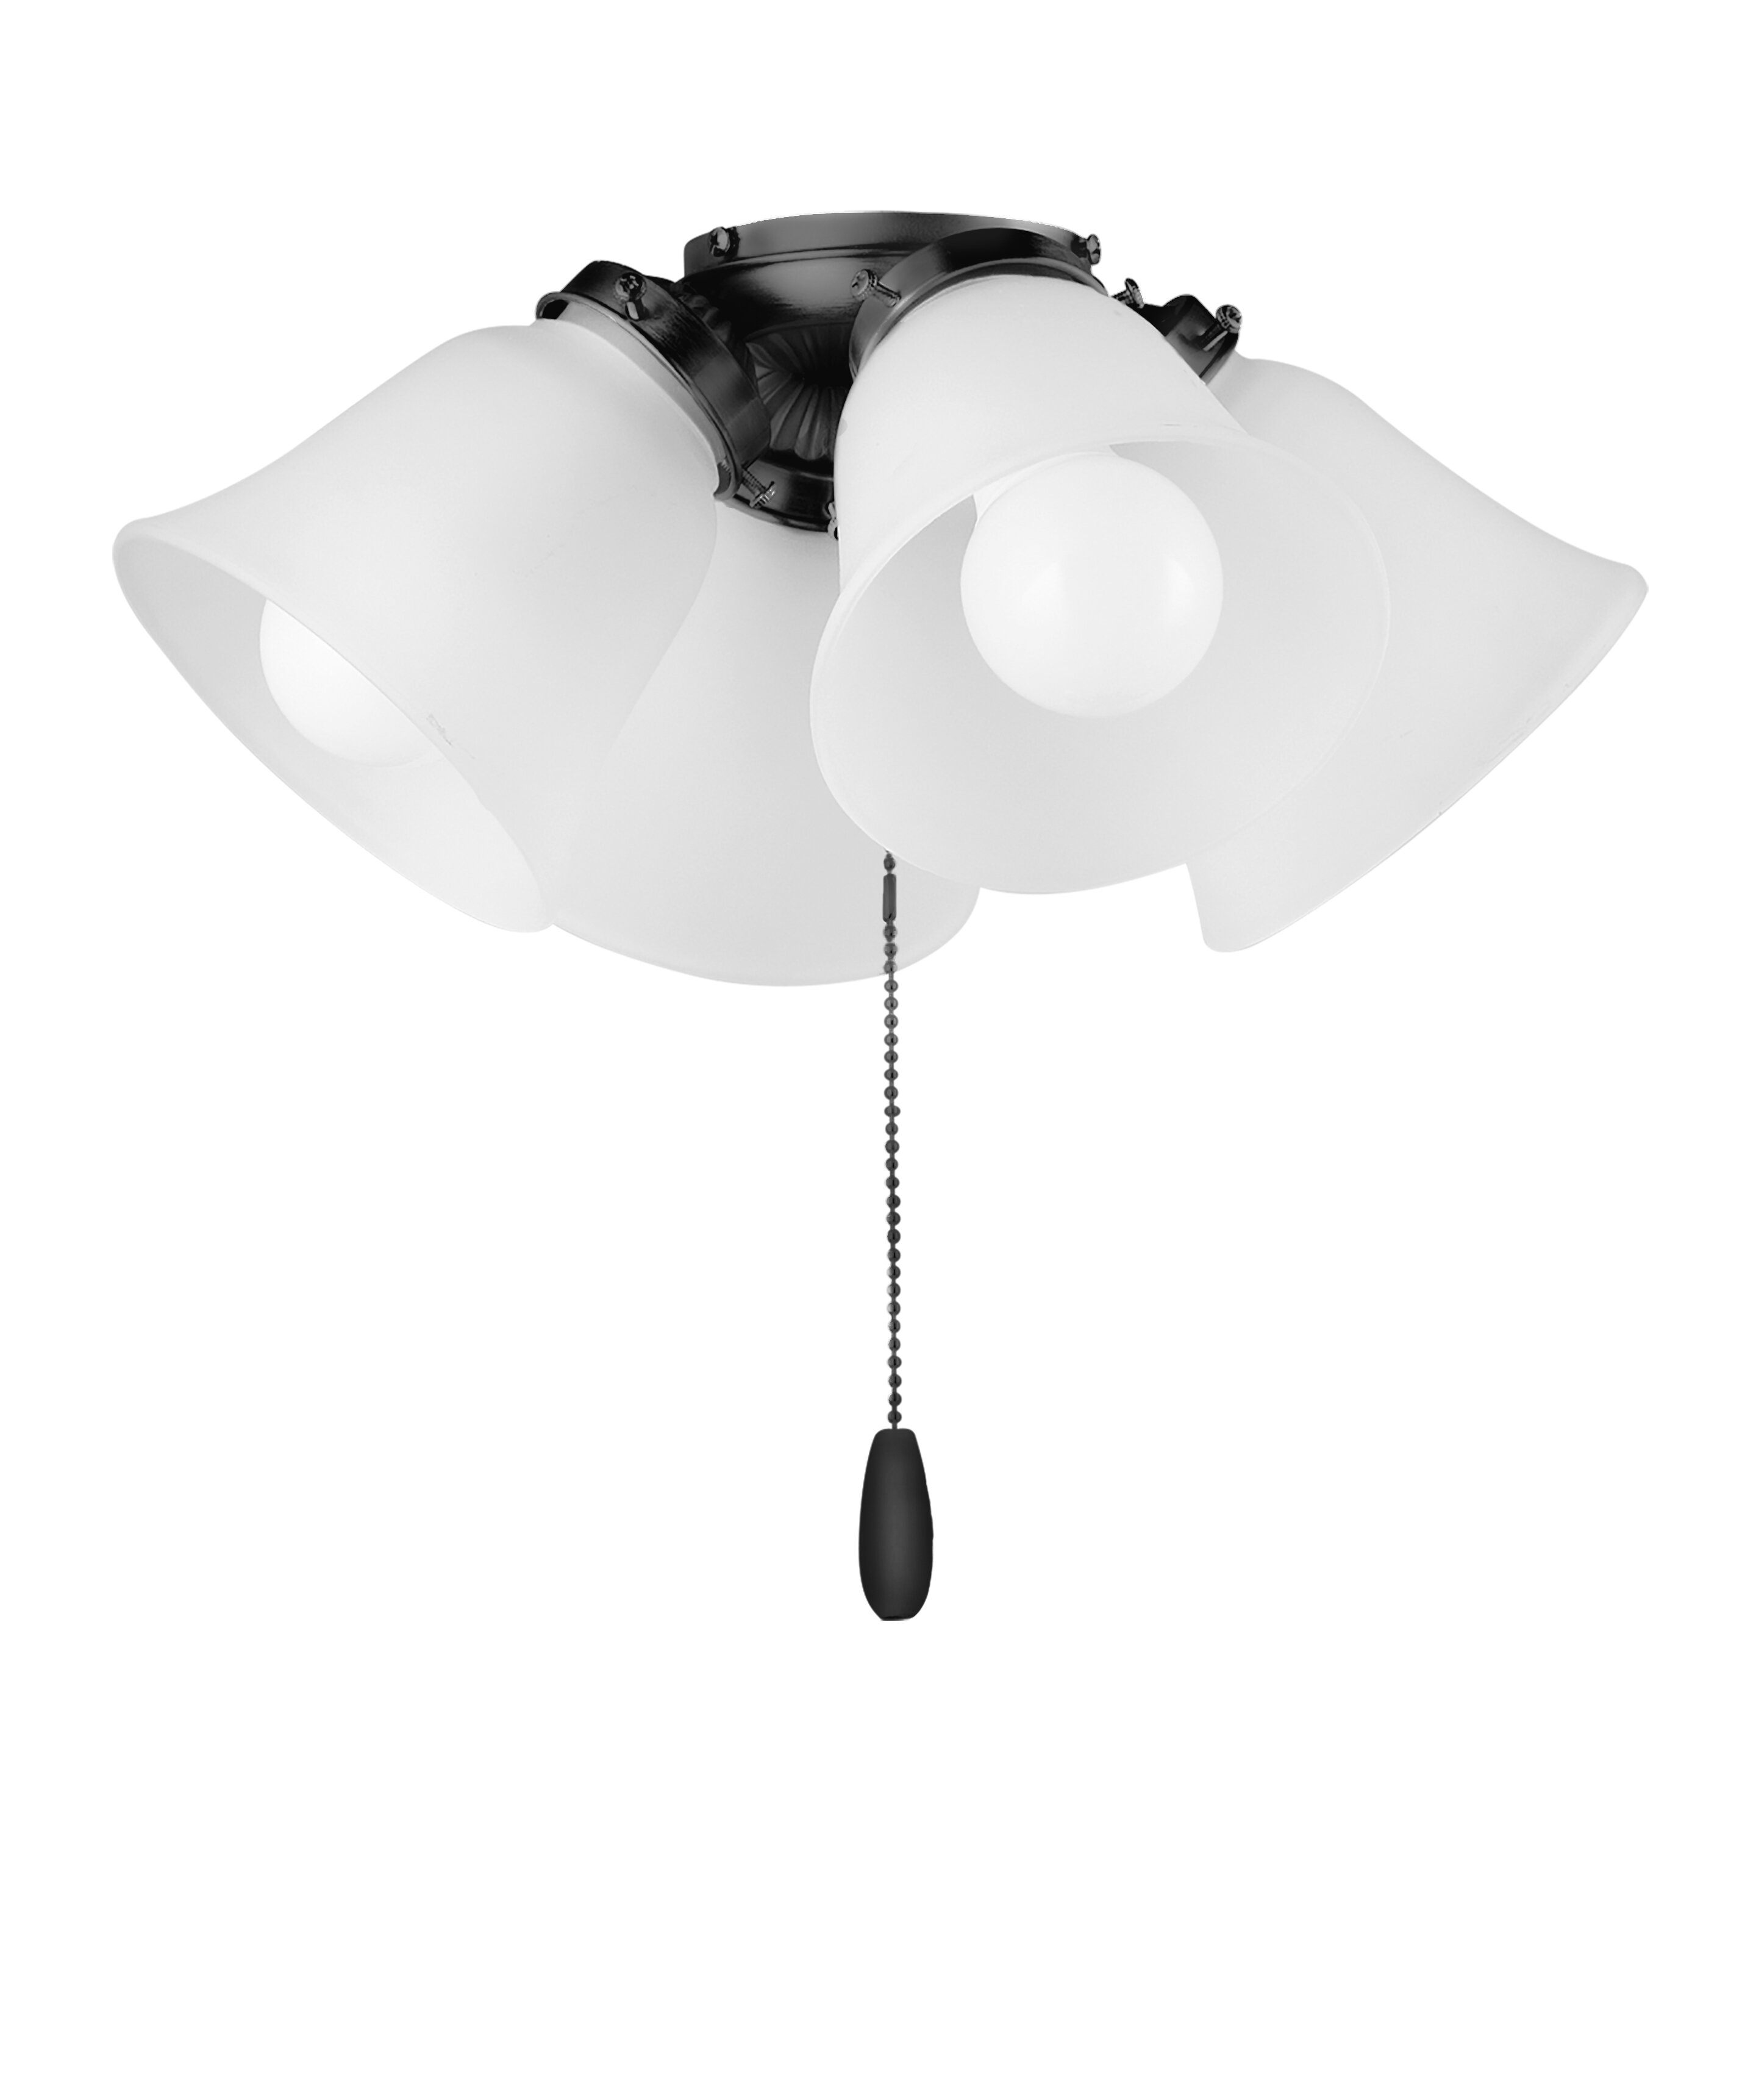 4 Bulb Ceiling Fan Light Kits You Ll Love In 2021 Wayfair